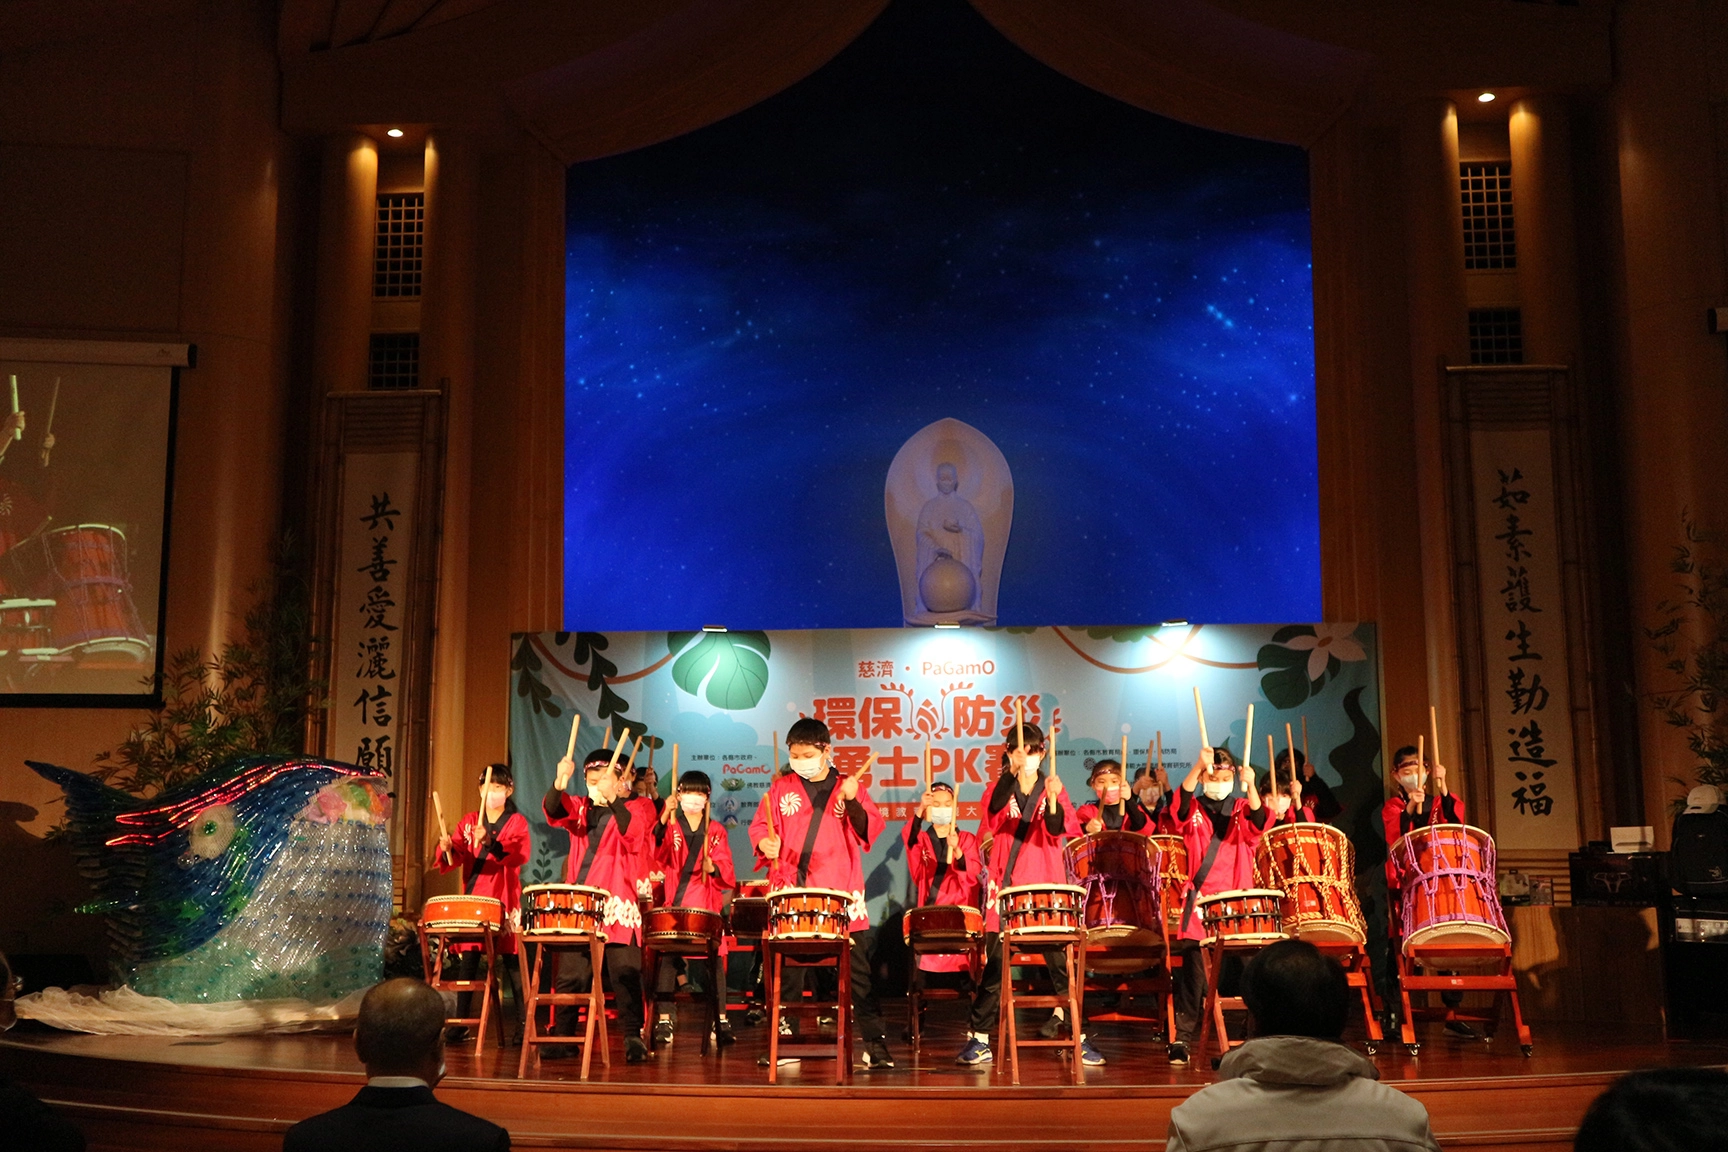 仙洞國小帶來熱鬧的太鼓表演為比賽揭開序幕。